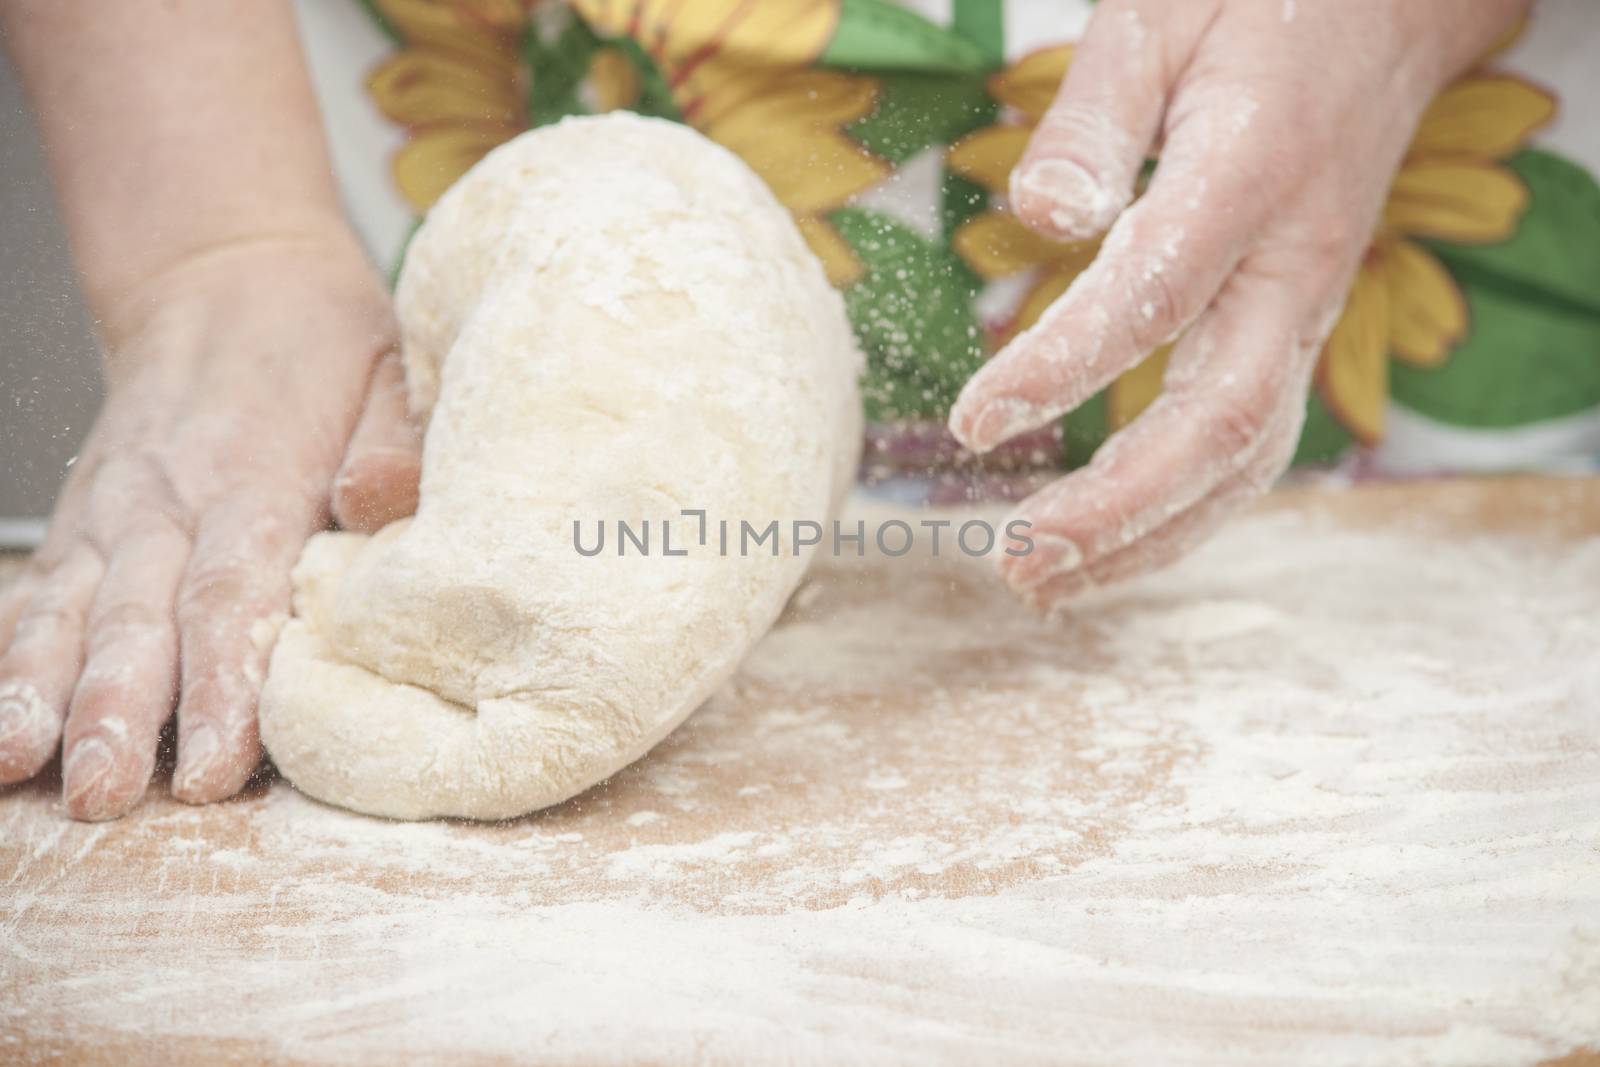 Women's hands preparing fresh yeast dough.